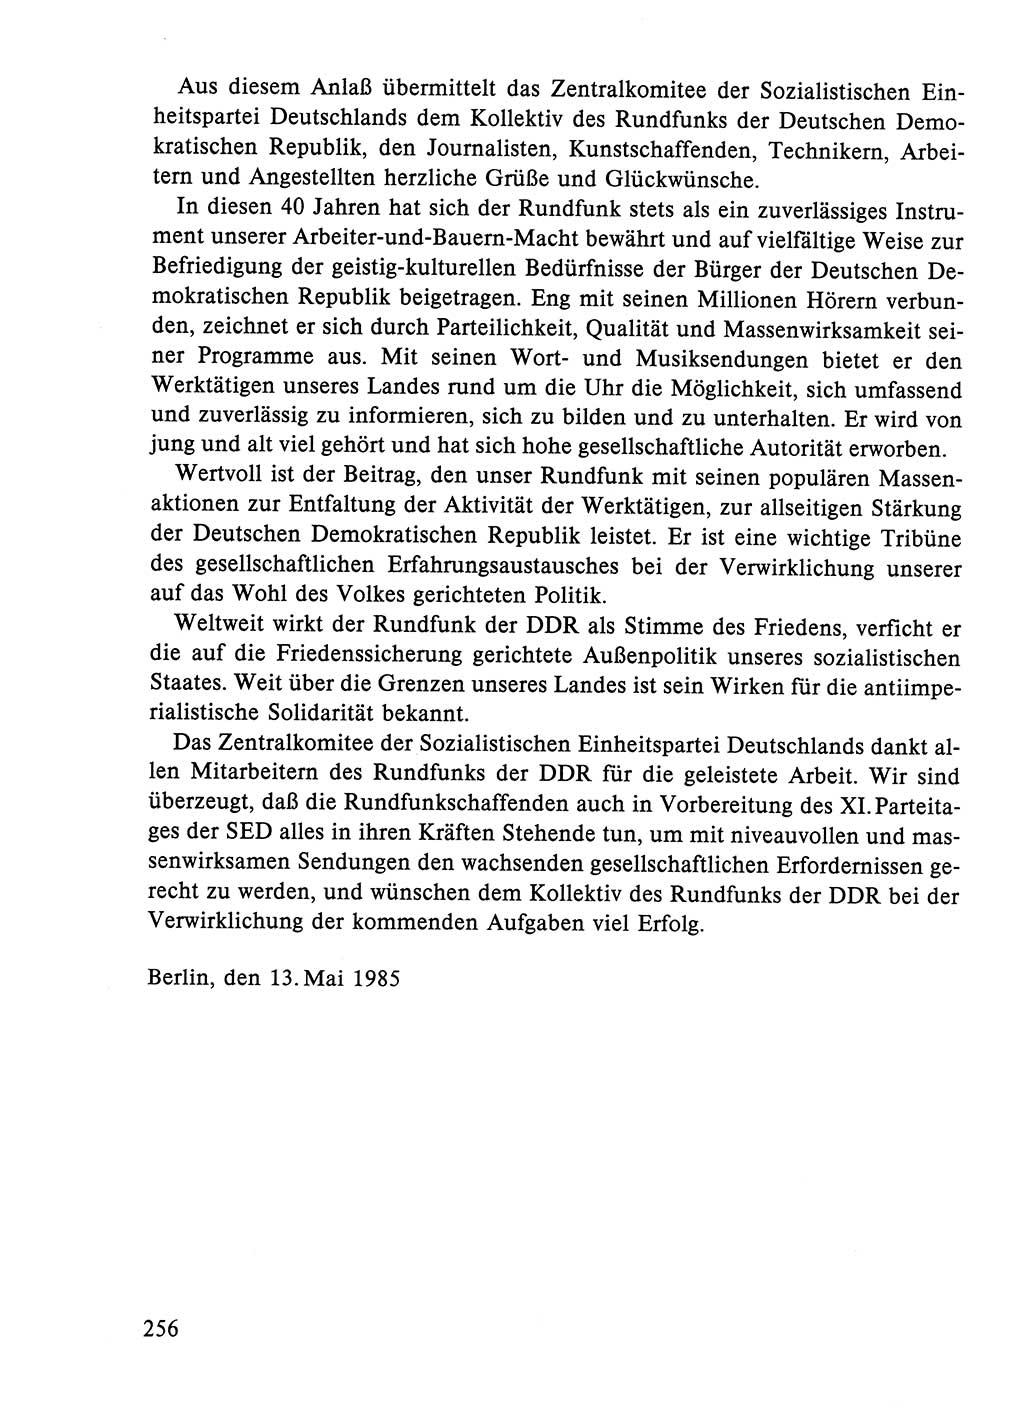 Dokumente der Sozialistischen Einheitspartei Deutschlands (SED) [Deutsche Demokratische Republik (DDR)] 1984-1985, Seite 171 (Dok. SED DDR 1984-1985, S. 171)